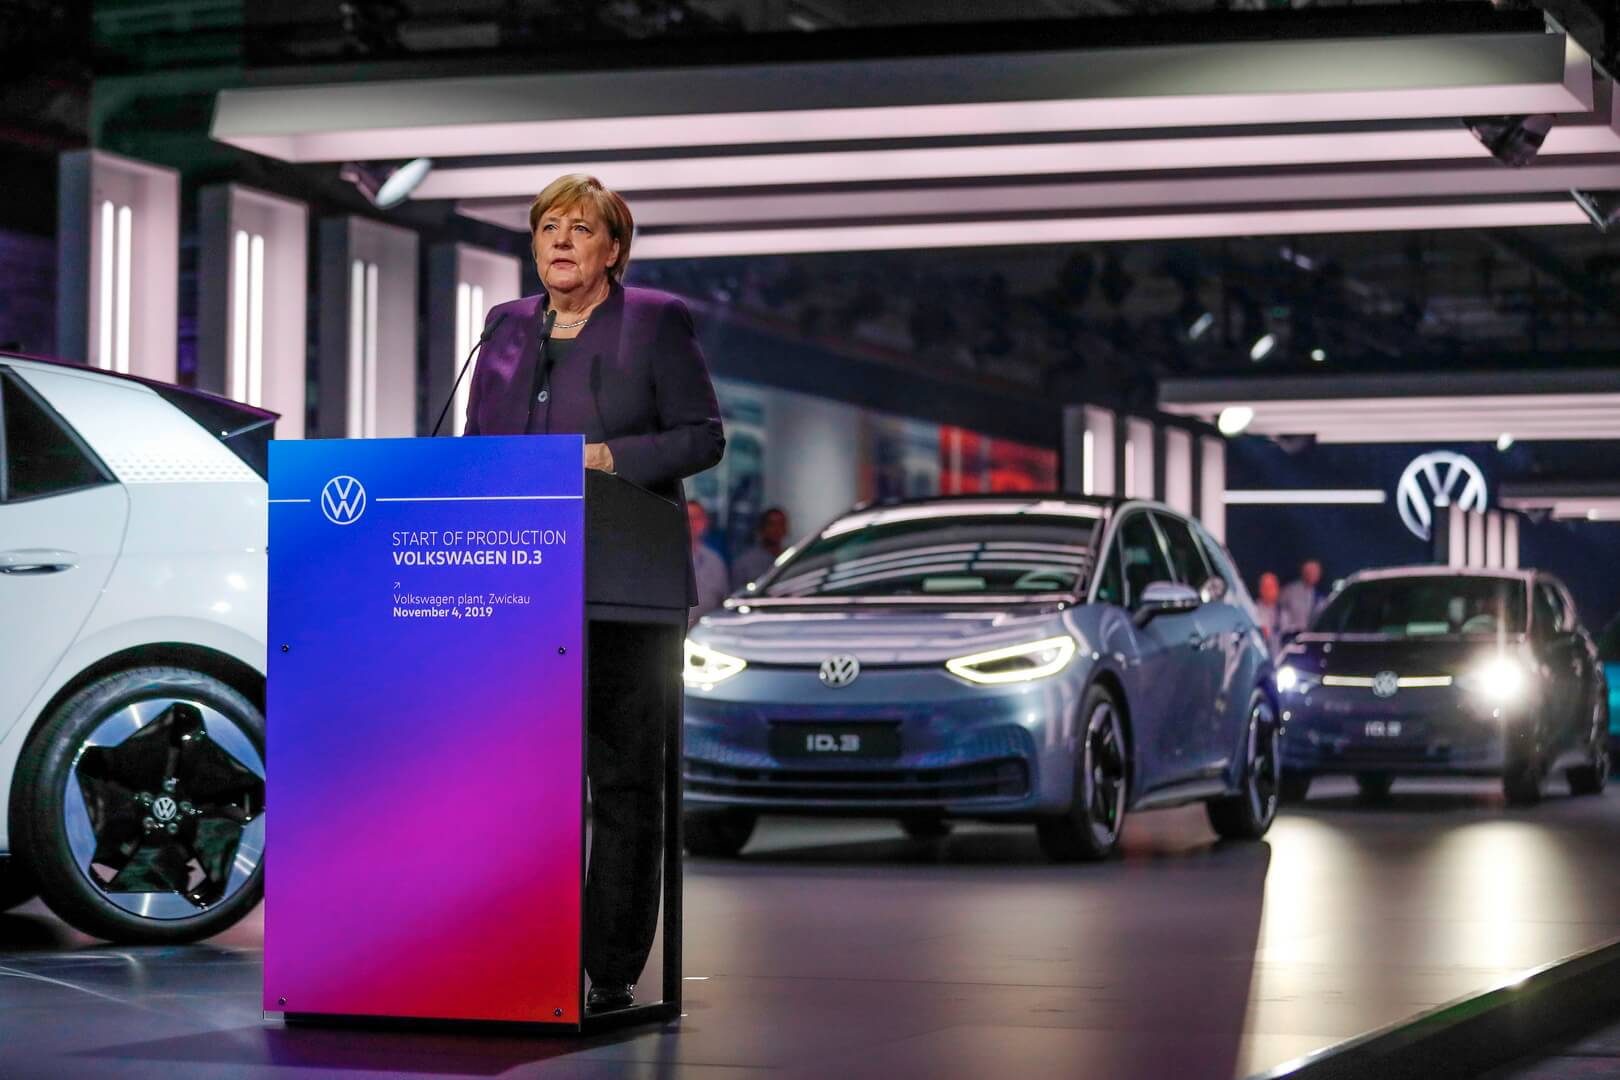 Ангела Меркель также пообещала свою поддержку быстрого расширения инфраструктуры зарядки для электромобилей в Германии